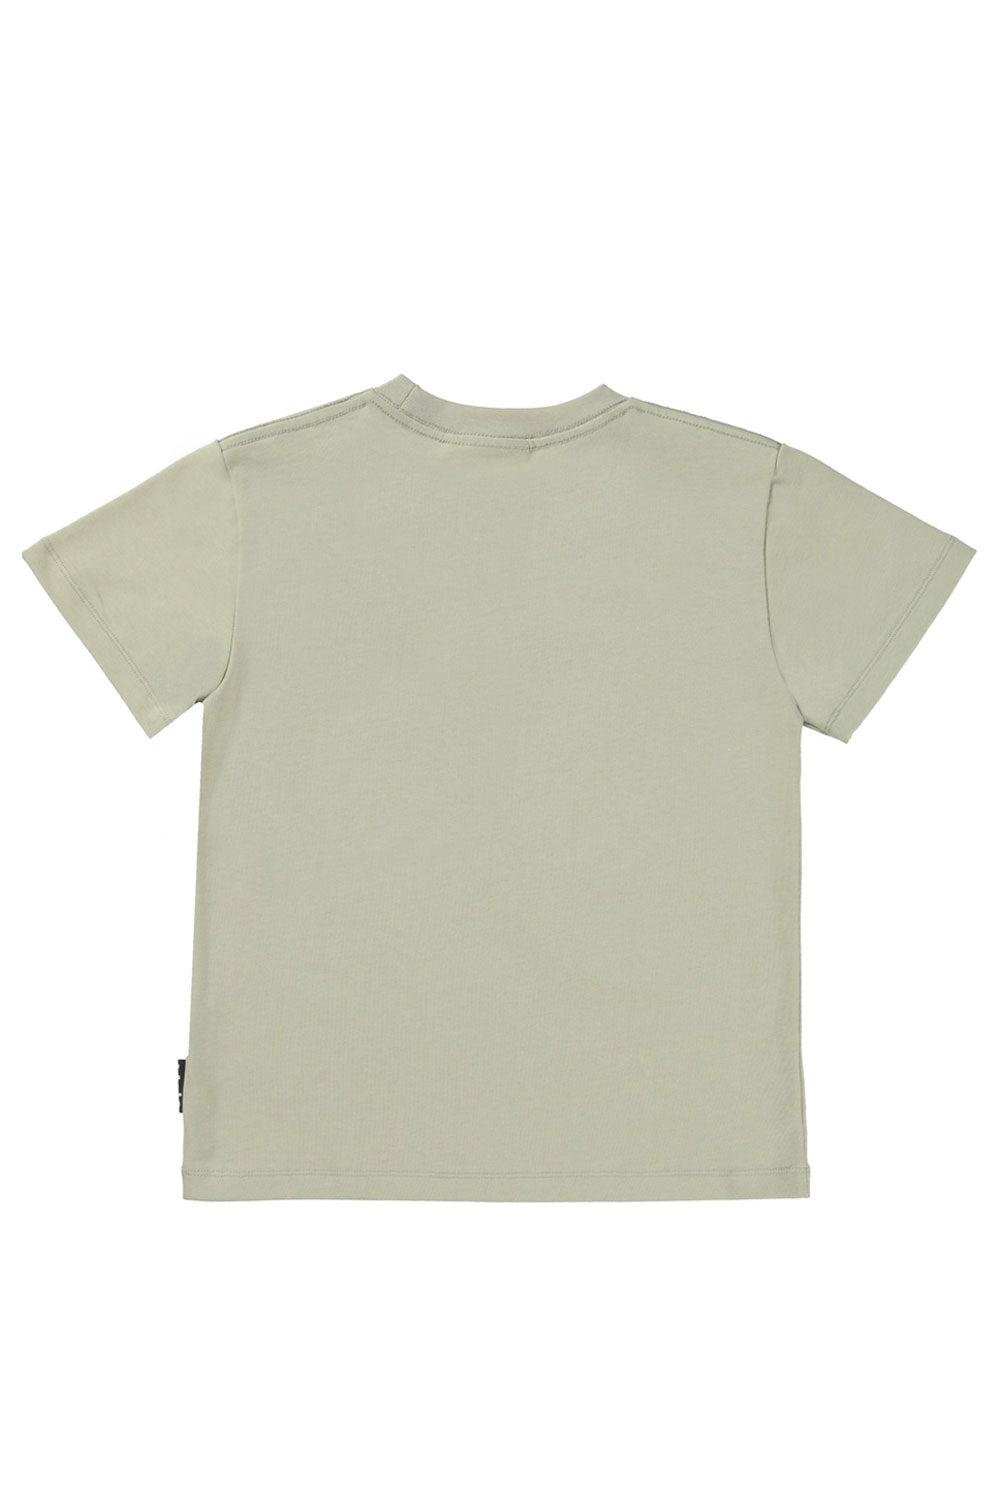 Roxo T Shirt for Boys Roxo T Shirt for Boys Maison7